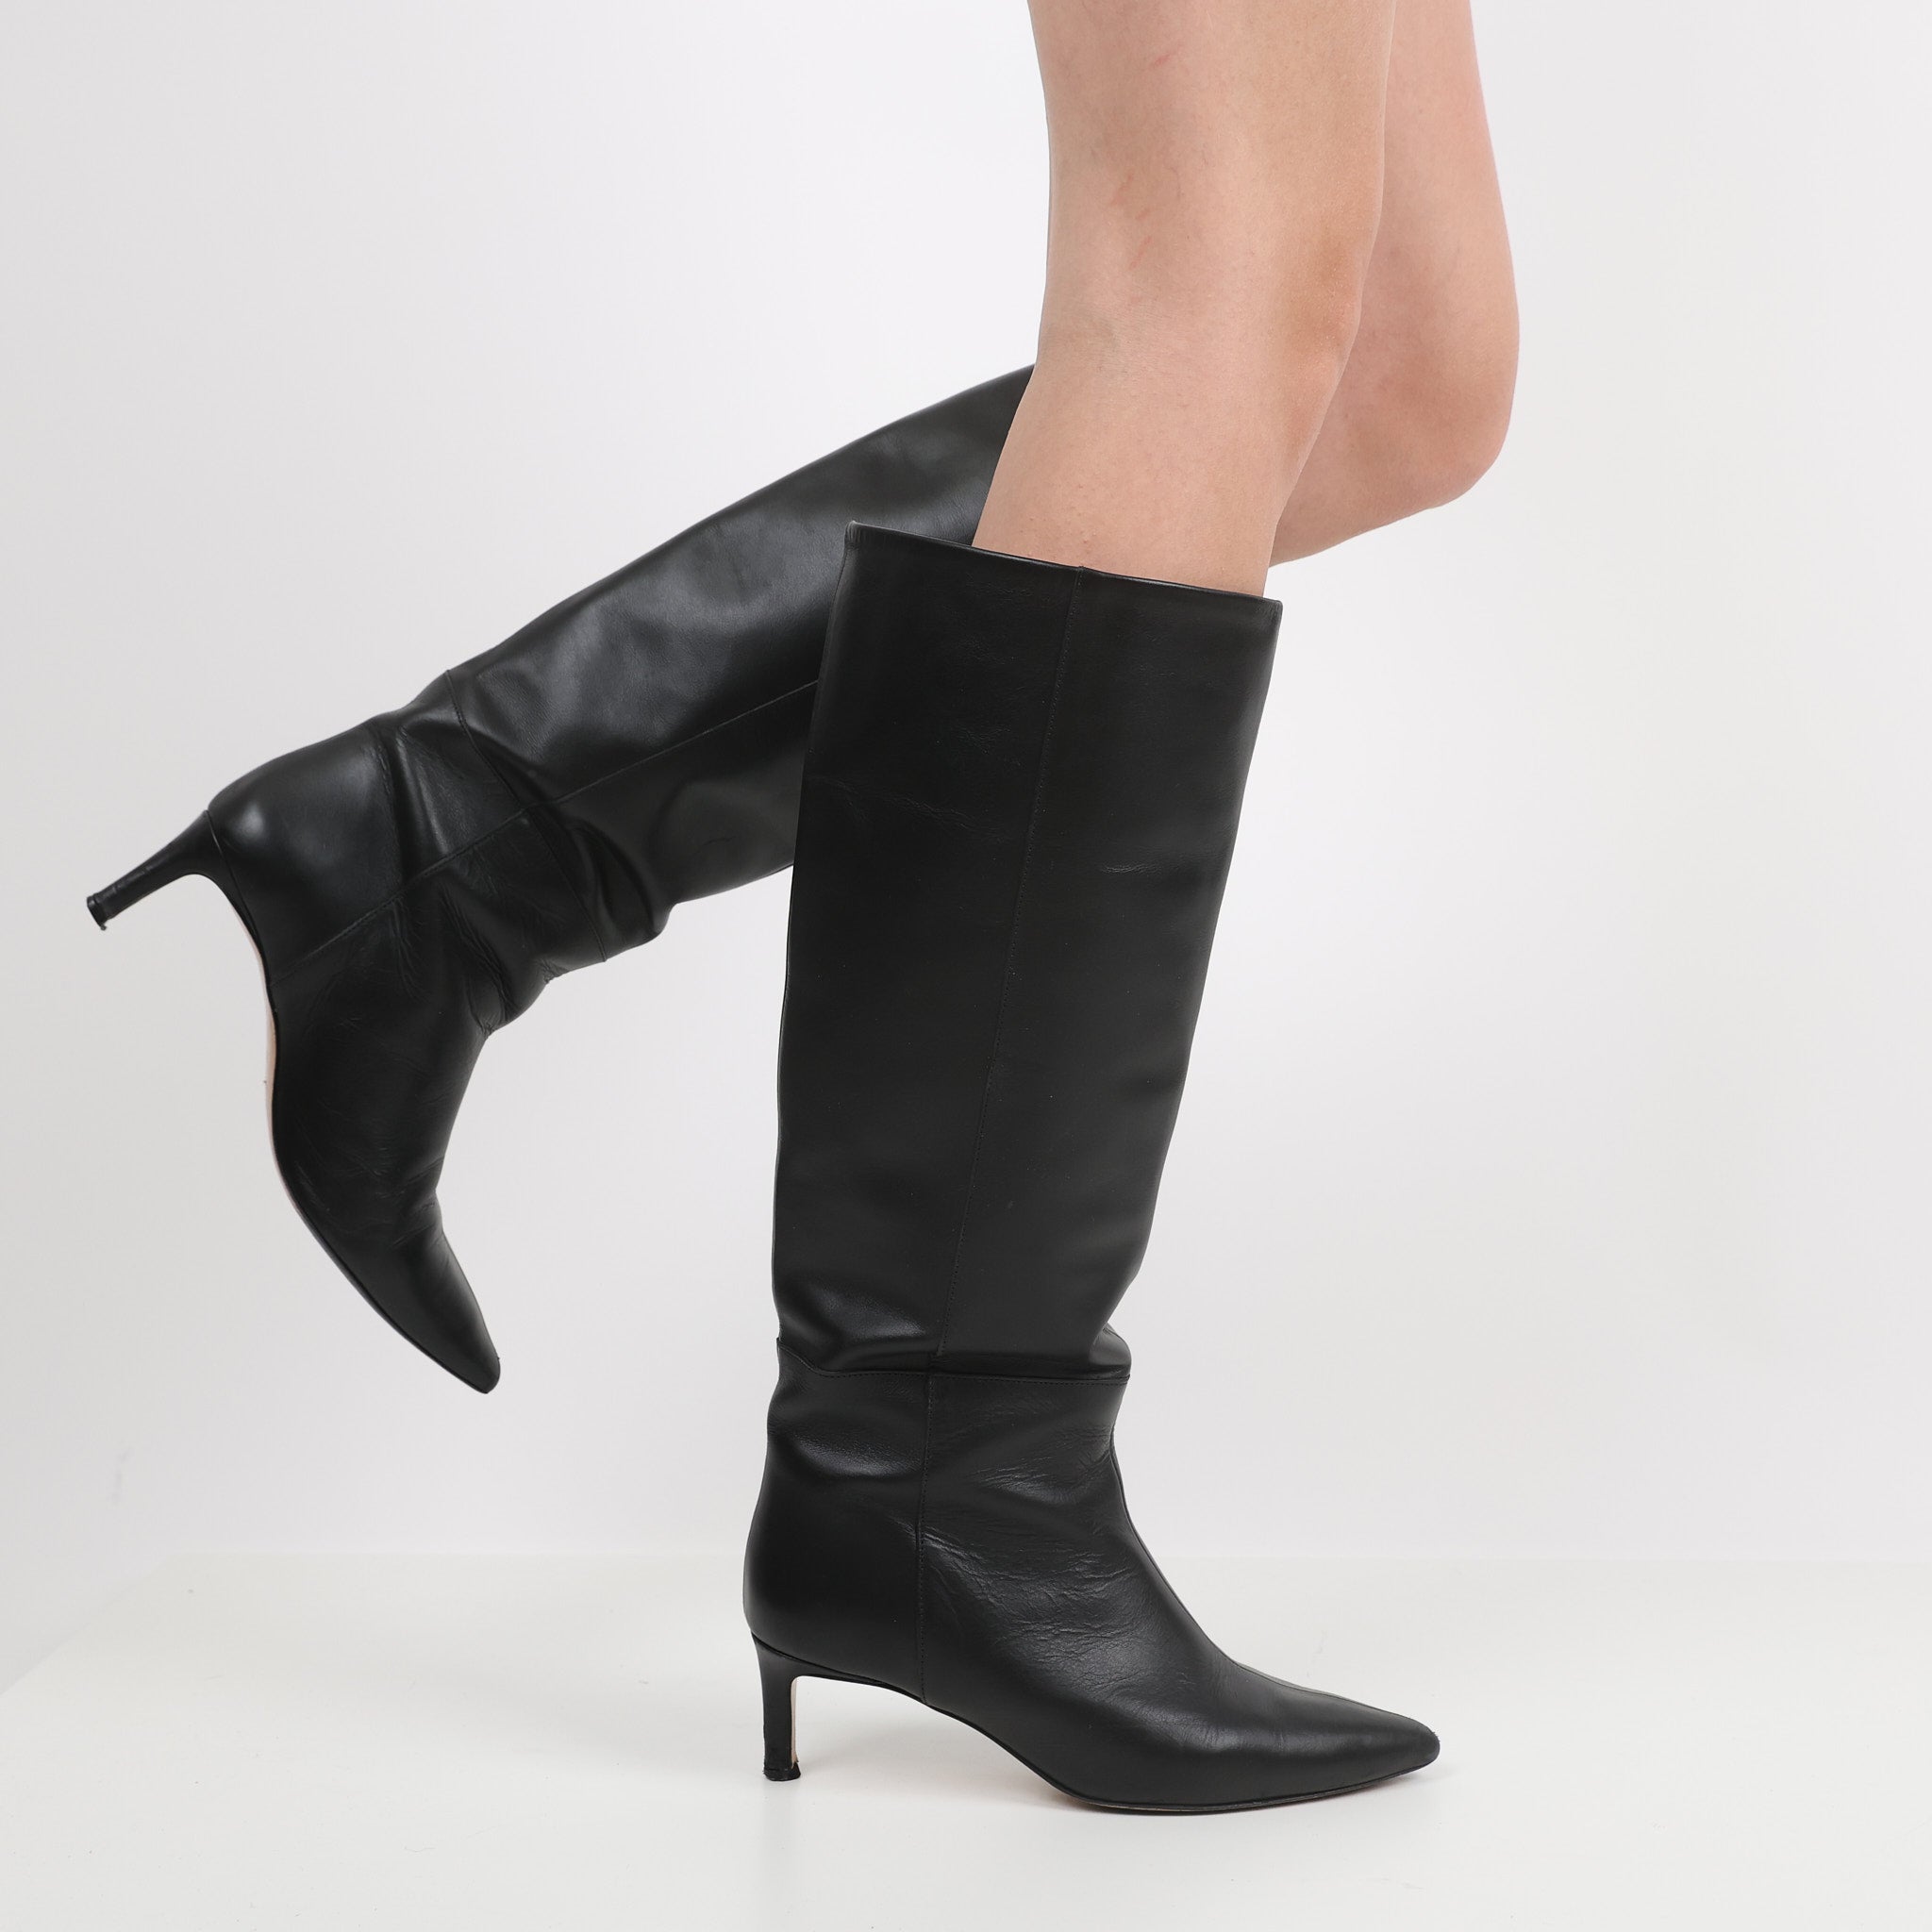 Boots, Shoe Size 39